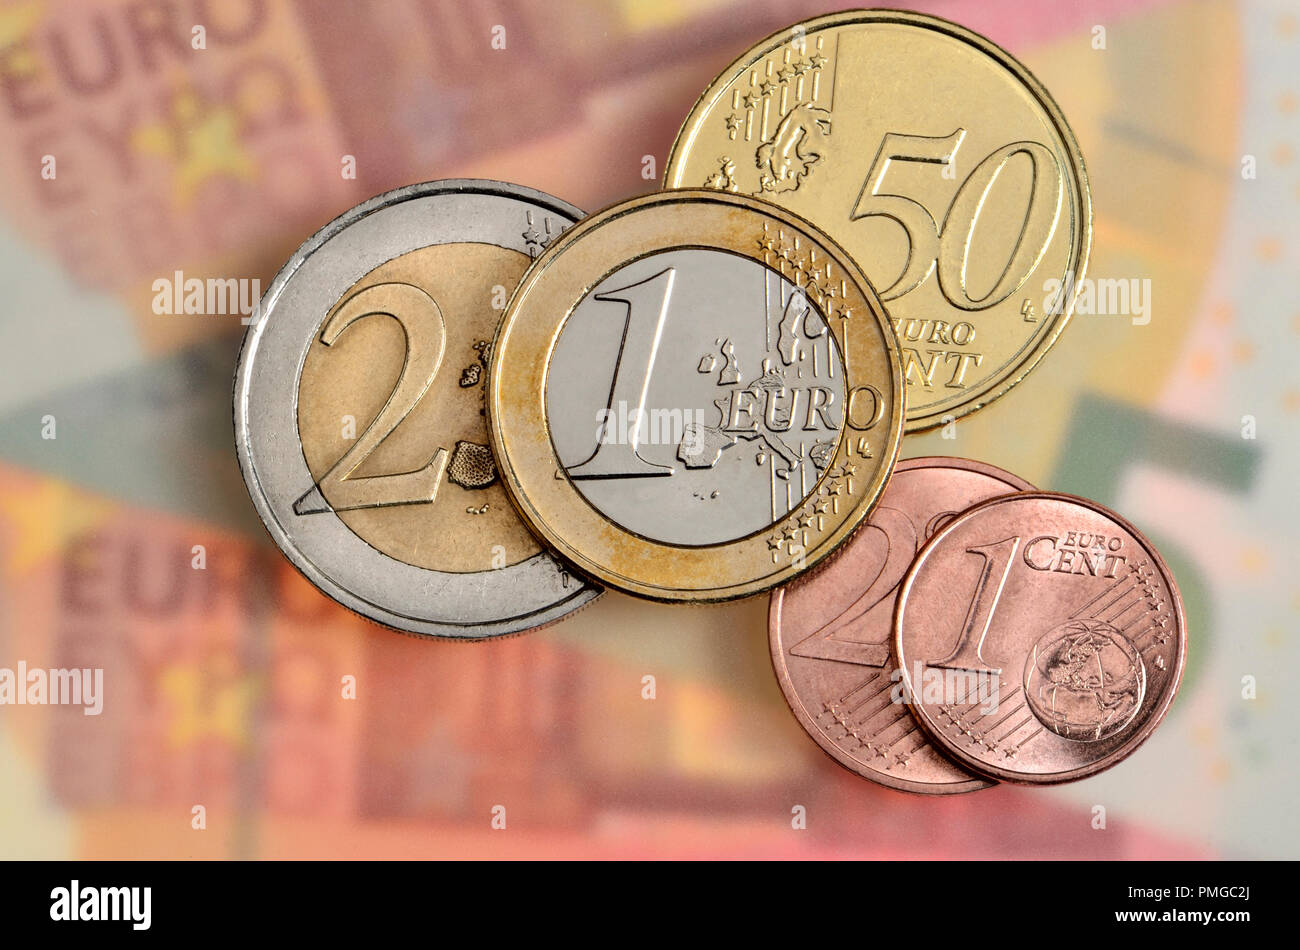 Monete metalliche in euro dell'originale di 12 membri della zona euro Foto Stock